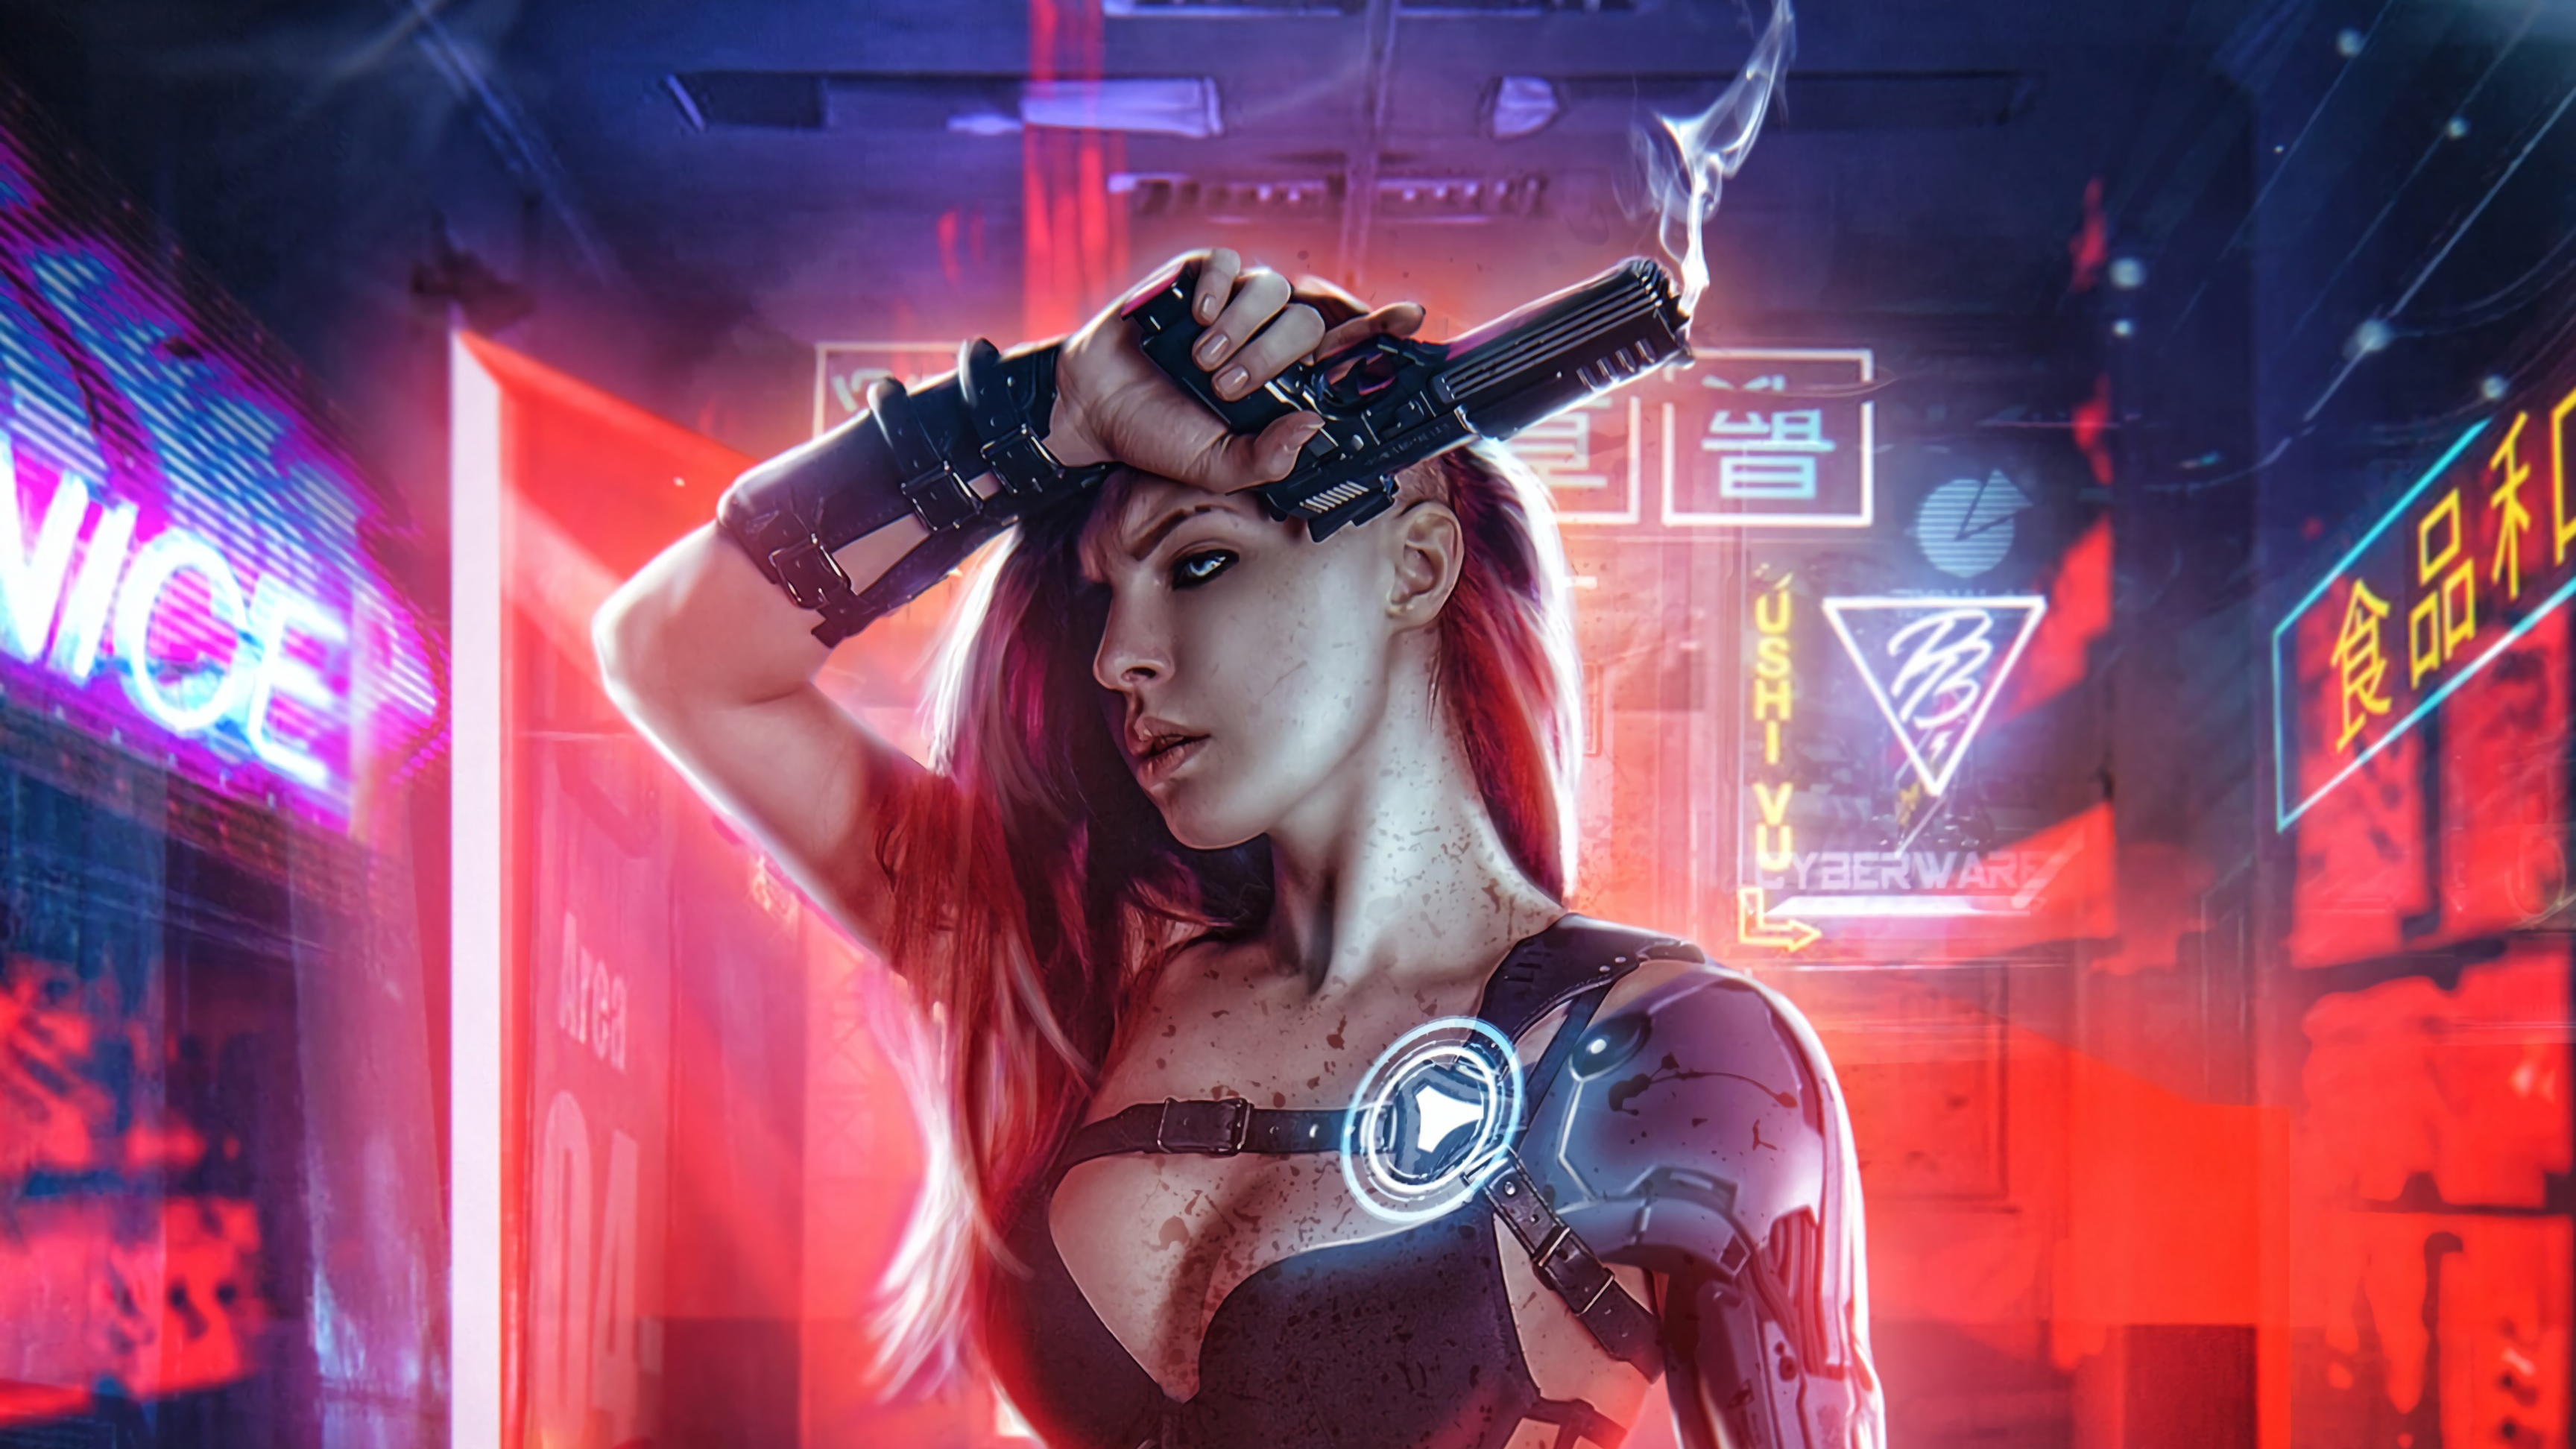 Cyberpunk Girl With Gun 4k Hd Artist 4k Wallpapers Images 0737